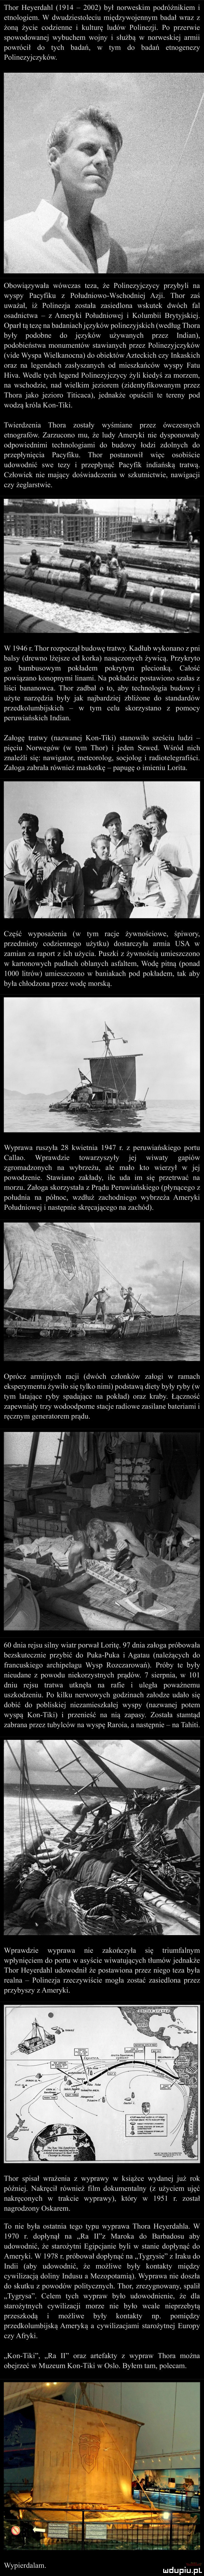 thor heyerdahl             był norweskim podróżnikiem i etnologiem. w dwudziestoleciu międzywojennym badał wraz y żona życie codzienne i kulturę ludów polinezji. po przerwie spowodowanej wybuchem wojny i służba w norweskiej armii powrócił do tych badań w tym do badań etnogenezy pulinezyjezykow. obowiązywała wowczas teza że polinezyjczycy przybyli na wyspy pacyfiku z południowo wschodniej acz thor zaś uważał iż polinezja została zasiedlona wskutek dwóch fal osadnictwa   z ameryki południowej i kolumbii brytyjskiej. oparł tą tezę na badaniachjęzykow polinezyjskich według thora były podobne do języków używanych przey indian podobieństwa monumentów stawianych przez polinezyjczykow vide wyspa wielkanocna do obiektów azteckich czy lnkaskich oraz na legendach zasłyszanych od mieszkańców wyspy fetu hifa. wedle tych legend polinezyjczycy żyli kiedys za morzem. na wschodzie nad wielkim jeziorem zidentyfikowanym przez thora jako jezioro titicaca. jednakże opuścili te tereny pod wodzą krola kon tiki. twierdzenia thora zostały wyśmiane przez ówczesnych etnografów. zarzucono mu że ludy ameryki nie dysponowały odpowiednimi technologiami do budowy łodzi zdolnych do przepłynięcia pacyfiku. thor postanowił więc osobiście udowodnic swe tezy i przepłynąć pacyfik indiańska tratwa. człowiek nie mający doświadczenia w szkutnictwie nawigacji czy żeglarstwie. w      r. thor rozpoczął budowę tratwy. kadłub wykonano z pni balsy drewno lżejsze od korka nasaczonych żywica. przykryto go bambusowym pokładem pokrytym plecionką. całość powiązane konopnymi linami. na pokładzie postawiono szałas z liści bananowca. thor zadbał o to aby technologia budowy i użyte nar ędzia były jak najbardziej zbliżone do standardów przedkolumbijskich   w tym celu skorzystano z pomocy peruwiańskich indian. załogę tratwy nazwanej kon-tiki stanowiło sie iu ludzi   pięciu norwegów w tym thor i jeden szwed. wśród nich znaleźli się nawigator meteorolog socjolog i radiotelegrafiści. załoga zabrała również maskotkę   papugę imieniu lolita część wyposażenia w tym racje żywnościowe. śpiwory pr edmioty codziennego użytku dostarczyła armia usa w zamian za raport z ich użycia. puszki z żywnością umieszczono w kartonowych pudłach oblanych asfaltem wodę pitną ponad iodt litrow umieszczono w baniakach pod pokładem tak aby była chłodzona przez wodę morska. wyprawa ruszyła    kwietnia      r. z peruwiańskiego portu callao. wprawdzie towarzyszyły jej wiwaty gapiów zgromadzonych na wybrzeżu ale mało kto wierzył w jej powodzenie. stawiano zakłady ile uda im się przetrwać na morzu. załoga skorzystała z pradu peruwiańskiego płynącego z południa na półnoe. wzdłuż zachodniego wybrzeża ameryki południowej i następnie skręcającego na zachód. oprócz armijnych racji dwóch członków załogi w ramach eksperymentu żywiło sie tylko nimi podstawa diety były ryby w tym latające ryby spadające na pokład oraz kraby. łączność zapewniały trzy wodoodpome stacje radiowe zasilane bateriami i ręcznym generatorem prądu.    dnia rejsu silny wiatr porwał lolitę.    dnia załoga próbowała bezskutecznie przybić do puka puka i agatau należących do franeuskrcgo archipelagu wysp rozczarowan. próby te były nieudane z powodu niekorzystnych prądów.   sierpnia w     dniu rejsu tratwa utknęła na rafie i uległa poważnemu usykodyeniu. po kilku nerwowych godzinach załodze udało sie dobić do pobliskiej niezamieszkałej wyspy nazwanej potem wyspą kon tiki i przenieść na nią zapasy. została stamtad zabrana przez tubylców na wyspę raroga a nastepnie   na tahiti. wprawdzie wyprawa nie zakończyła się triumfalnym wpłynięciem do portu w asyście wiwatujących tłumów jednakże thor heyerdahl udowodnił że postawiona przez niego teza była realna   polinezja rzeczywiście mogła zostać zasiedlona przez przybyszy z ameryki. thor spisał wrażenia z wyprawy w książce wydanej już rok później. nakręcił również ﬁlm dokumentalny z użyciem ujęć nakręconych w trakcie wyprawy który w      r. został nagrodzony oskarem. to nie była ostatnia tego typu wyprawa thora heyerdahla. w      r. dopłynął na ra wz maroka do barbadosu aby udowodnić że starożytni egipcjanie byli w stanie dopłynac do ameryki. w      r. próbował dopłynąć na tygrysie z iraku do indii aby udowodnić. że możliwe były kontakty między cywilizacją doliny indusu a mezopotamia. wyprawa nie doszła do skutku z powodów politycznych. thor zrezygnowany spalił tygrysa. celem tych wypraw bylo udowodnienie że dla starożytnych cywiliz i morze nie było wcale nieprzebyta przeszkoda i możliwe były kontakty np. pomiędzy przedkolumbijska ameryka a cywilizacjami starożytnej europy ezy afryki. kon tiki ra    oraz anefakty z wypraw thora można obejrzeć w muzeum kon tiki w oslo. byłem tam. polecam. wypierdalam. mdupqul